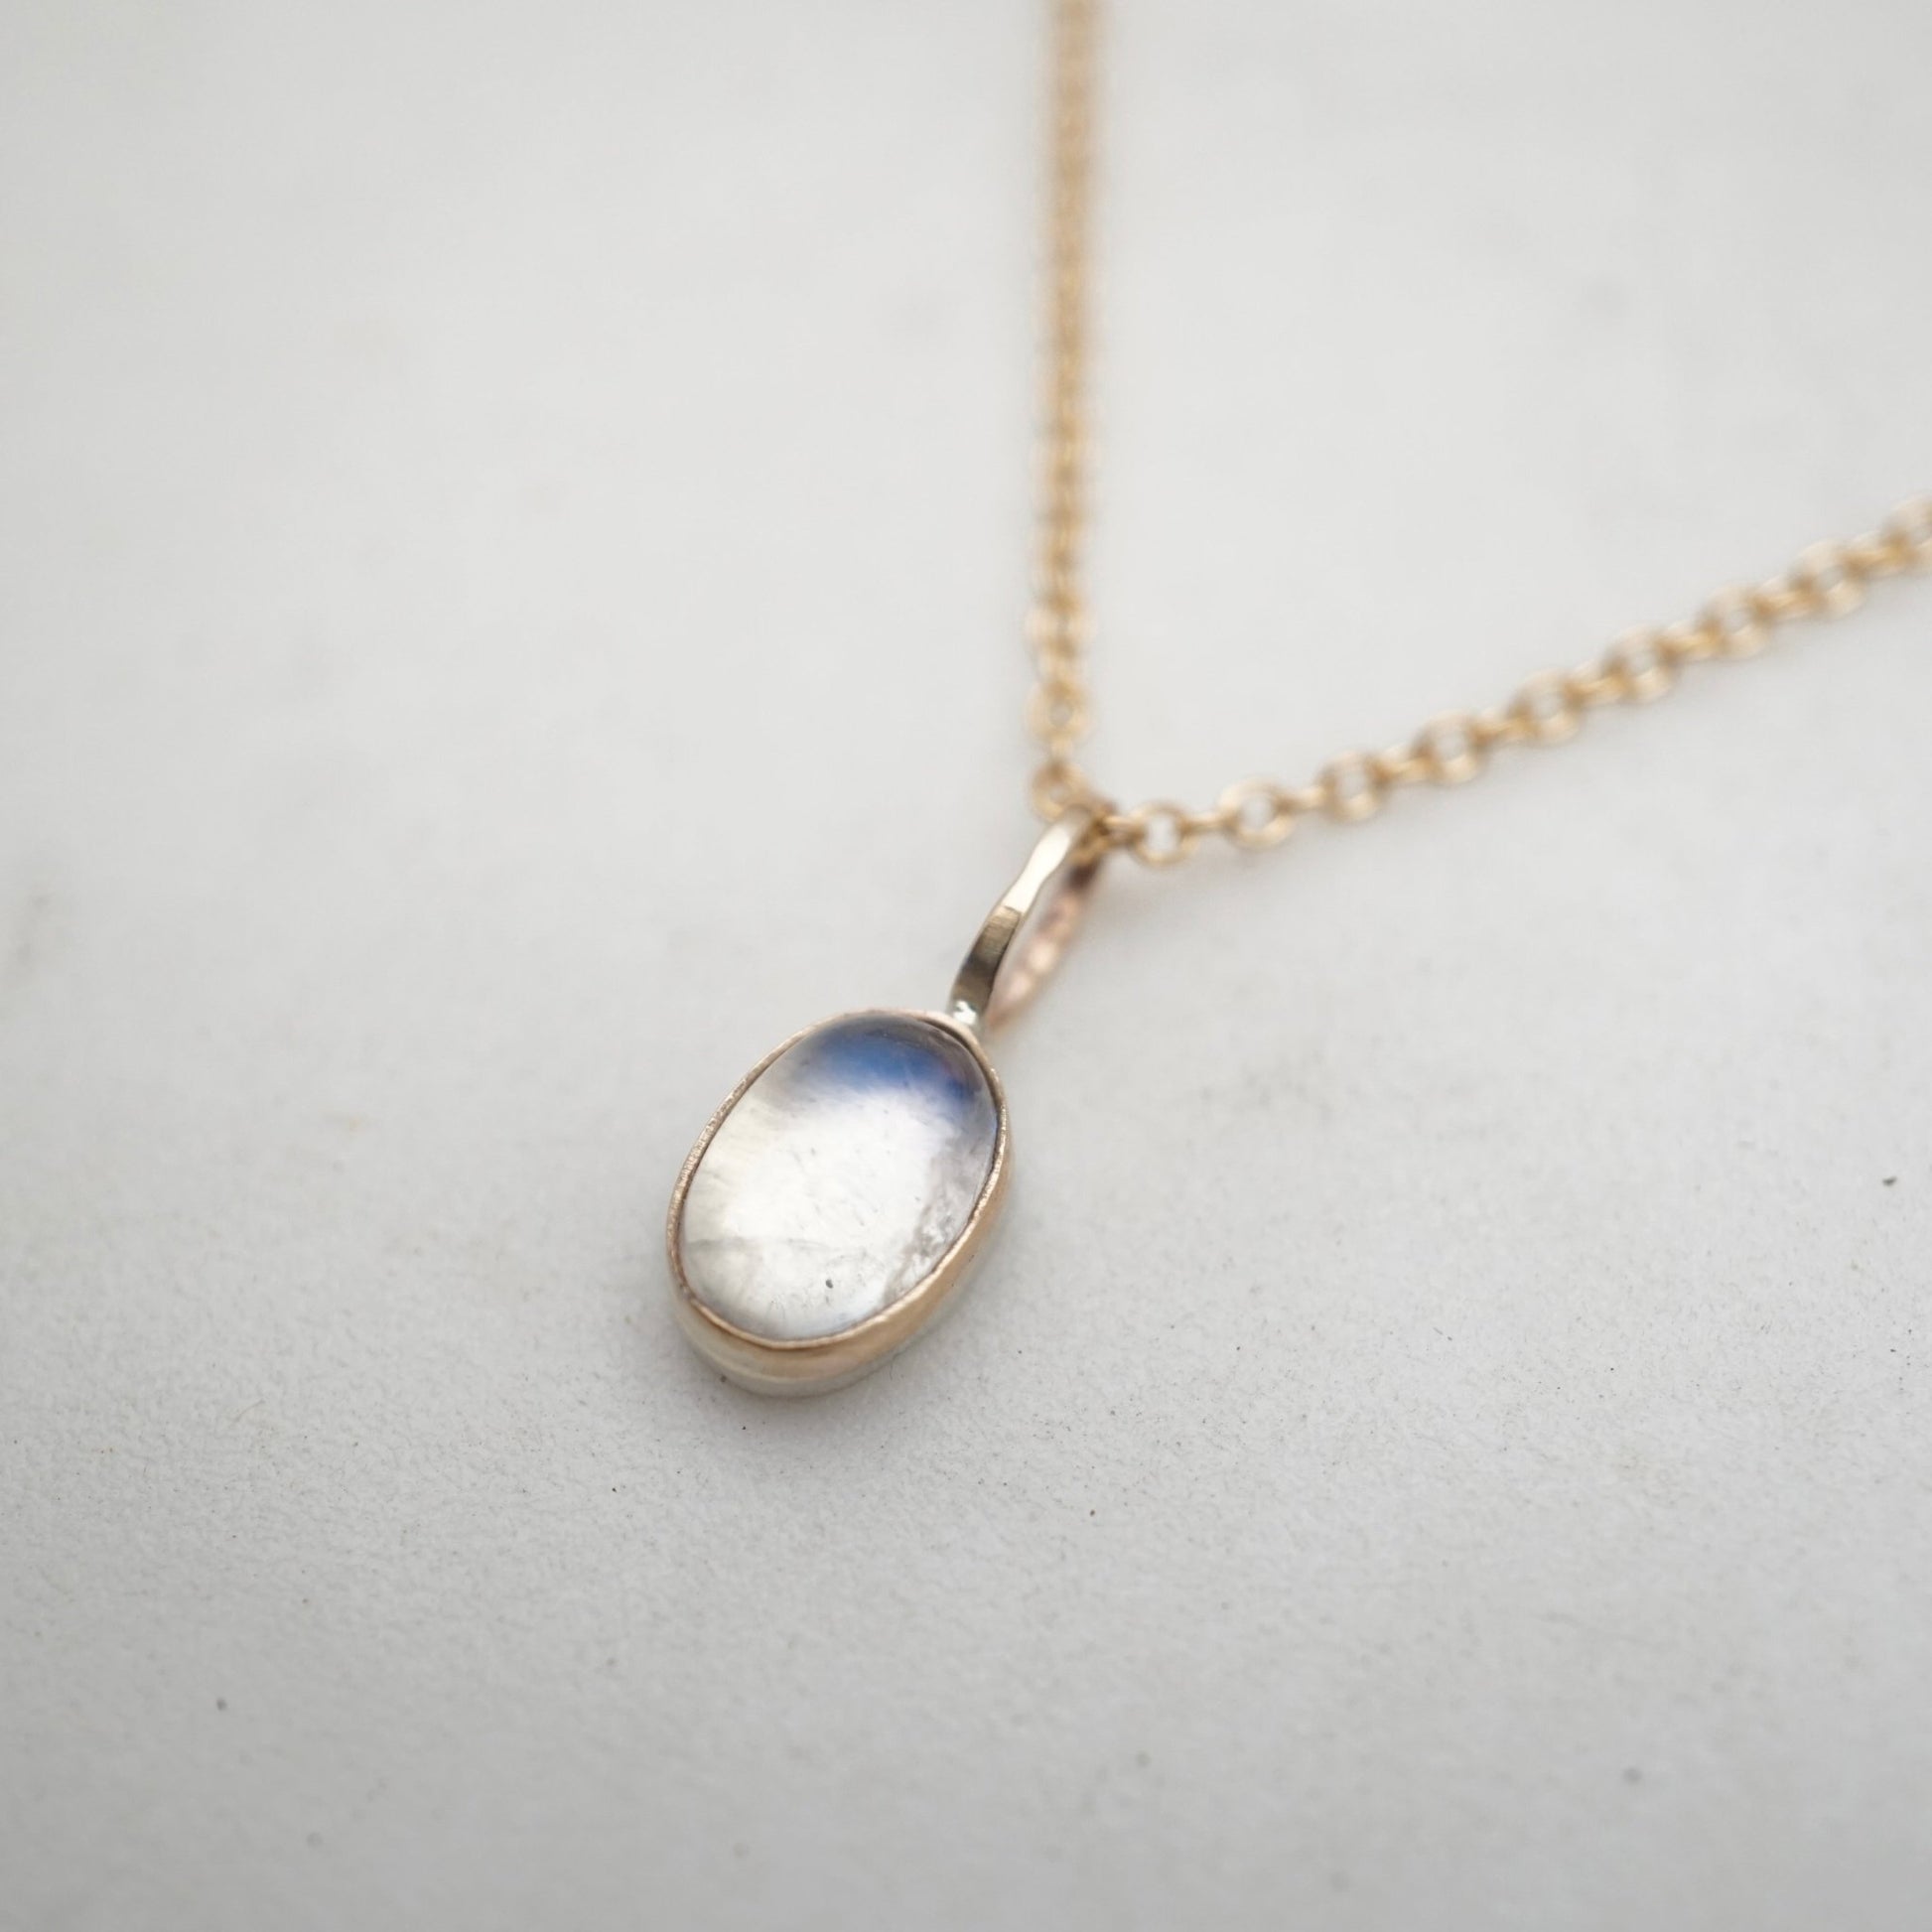 teeny tiny 14k GOLD and rainbow moonstone necklace - Lumenrose